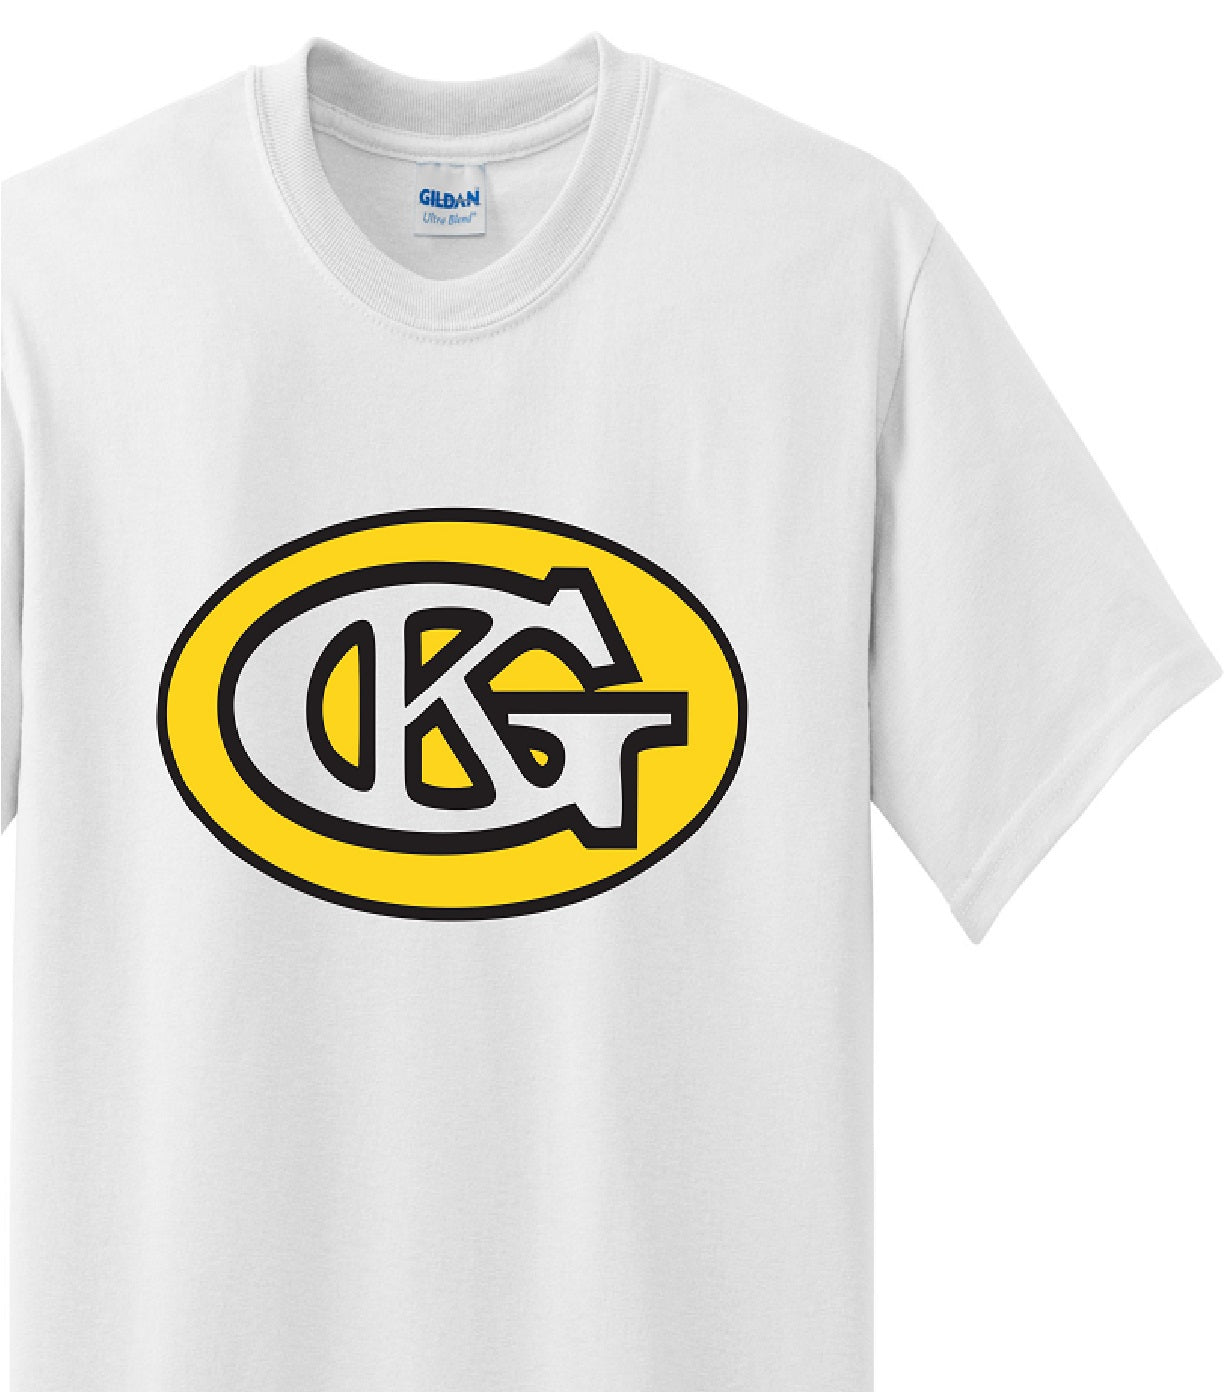 Skate Men's Shirt - CKG (White) - MYSTYLEMYCLOTHING